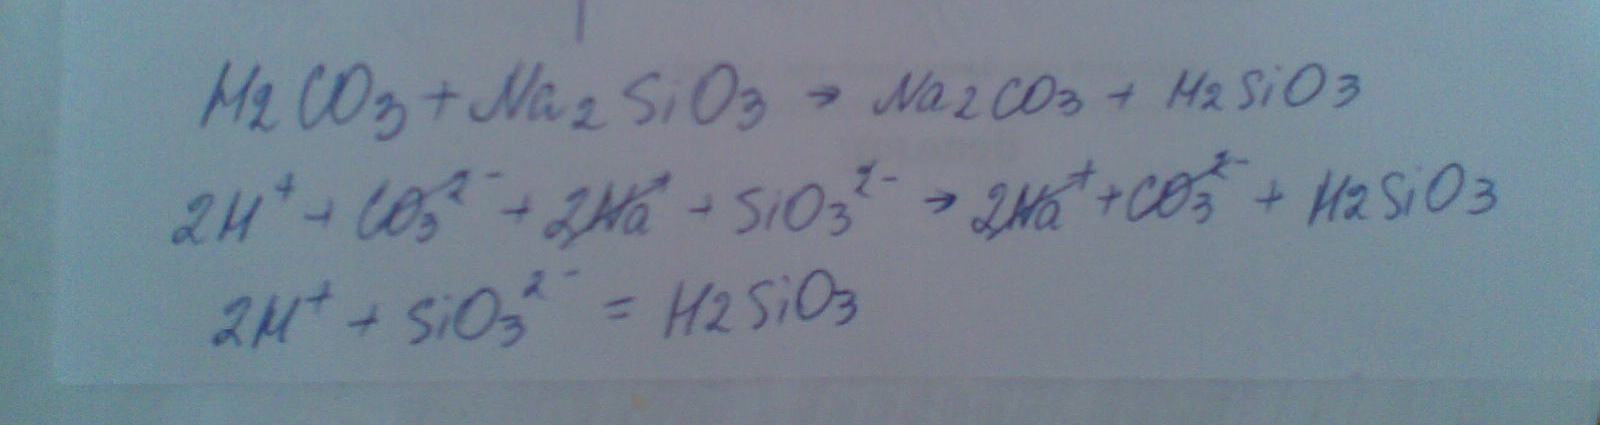 Sio2 koh k2sio3 h2o. 2h sio3 h2sio3 молекулярное уравнение. H2sio3 прокалили.